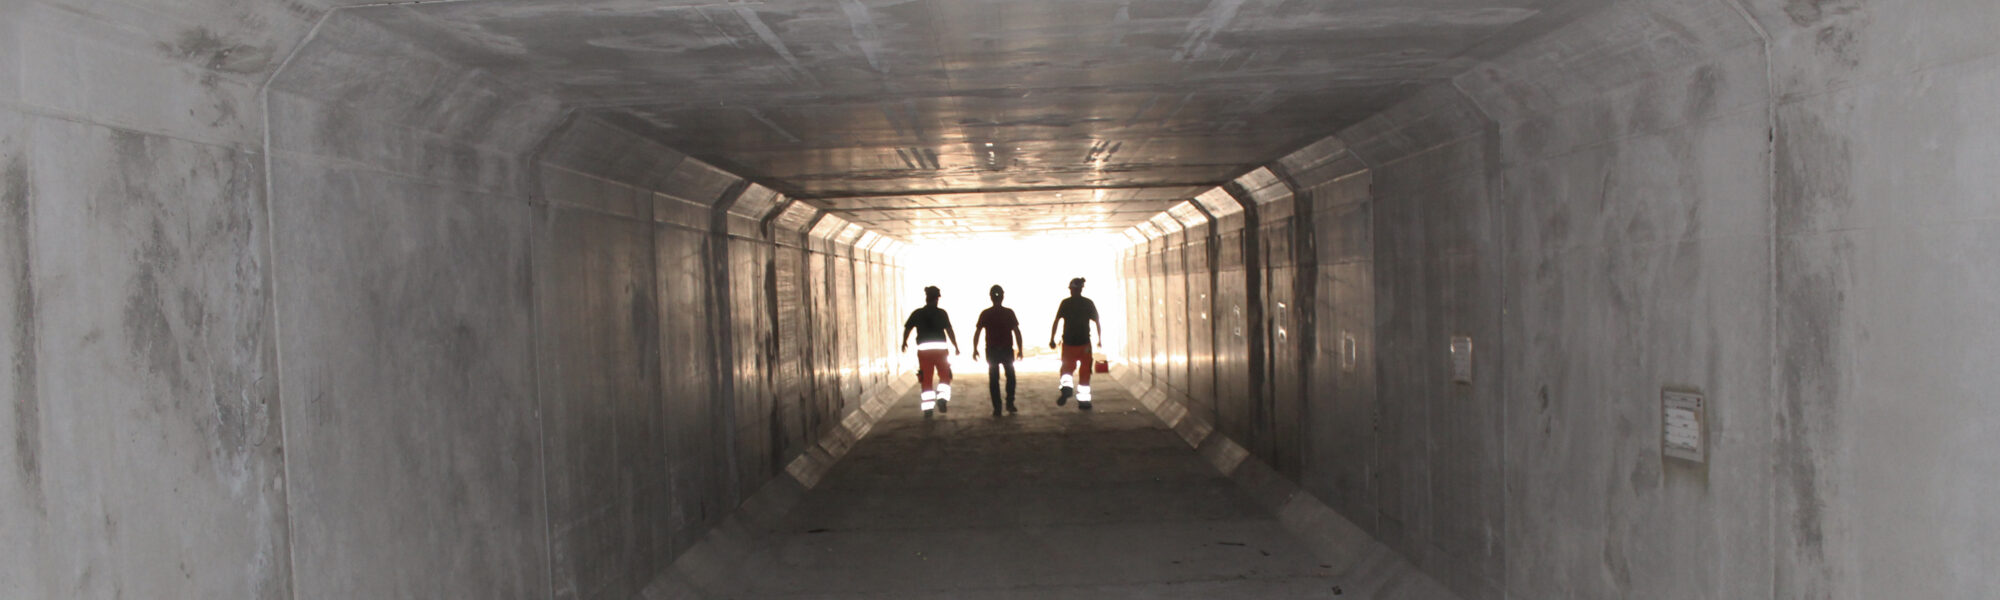 3 personer går gennem en beton-tunnel.